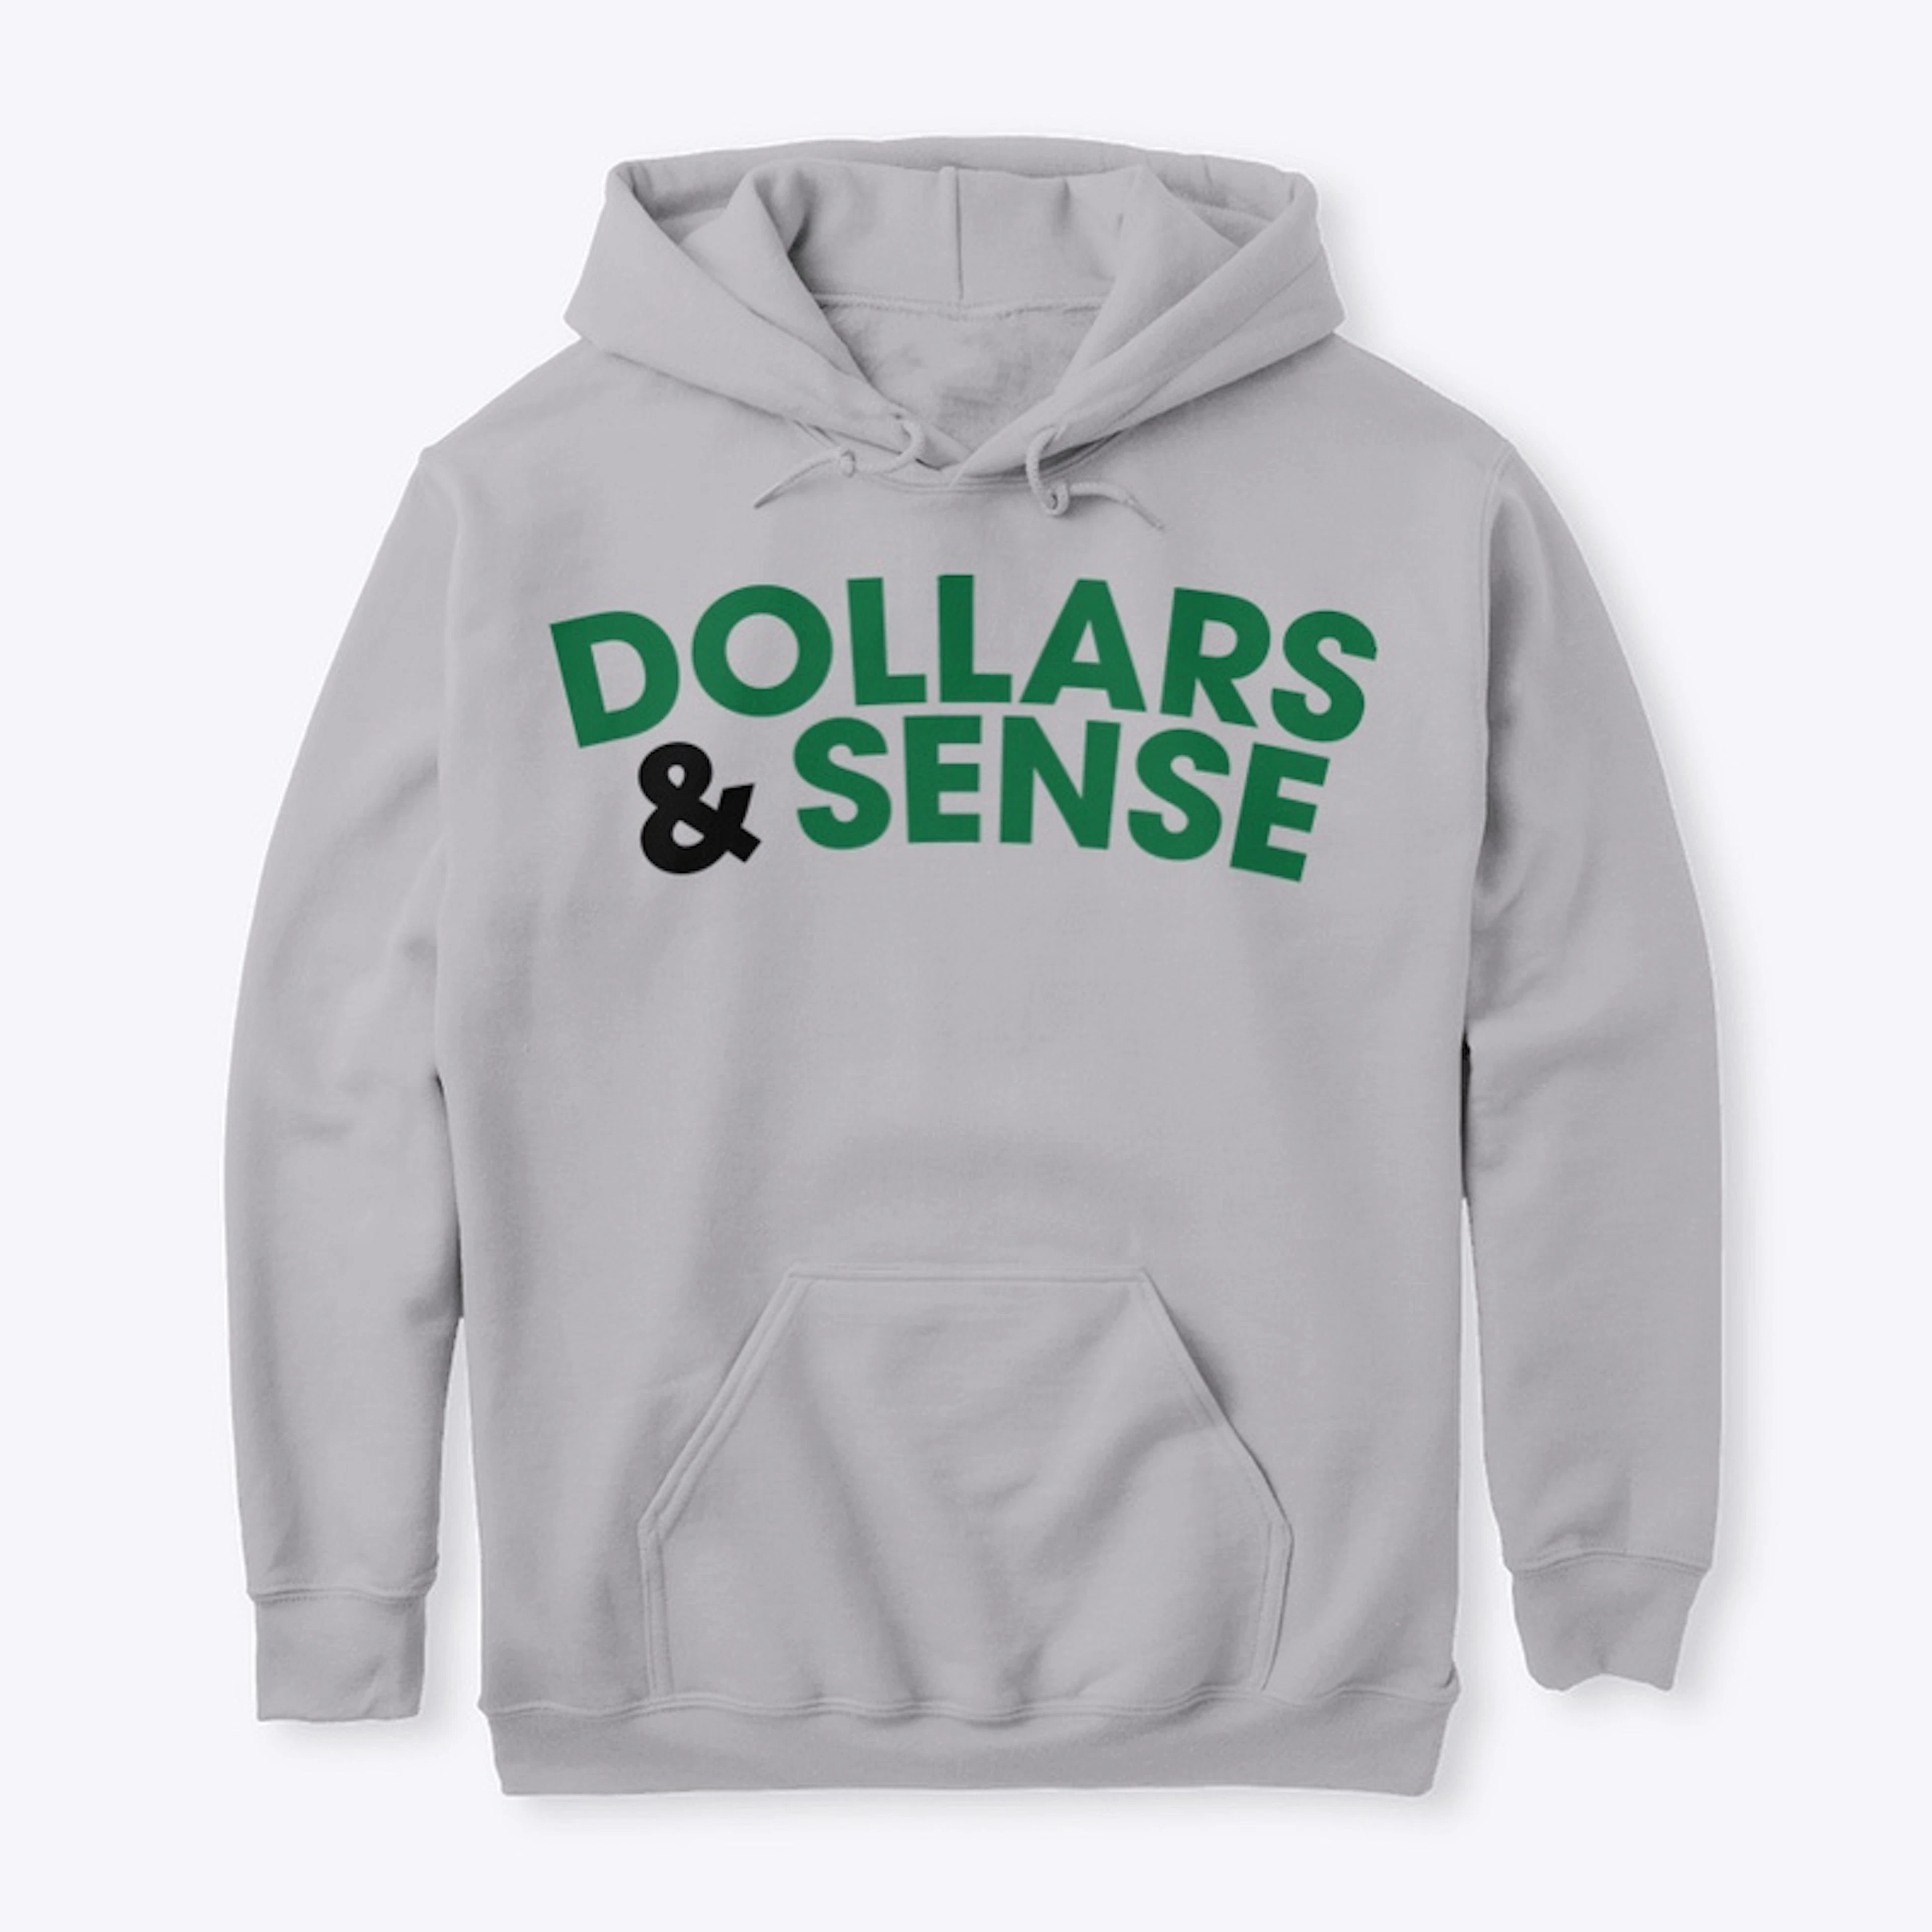 Dollars and Sense